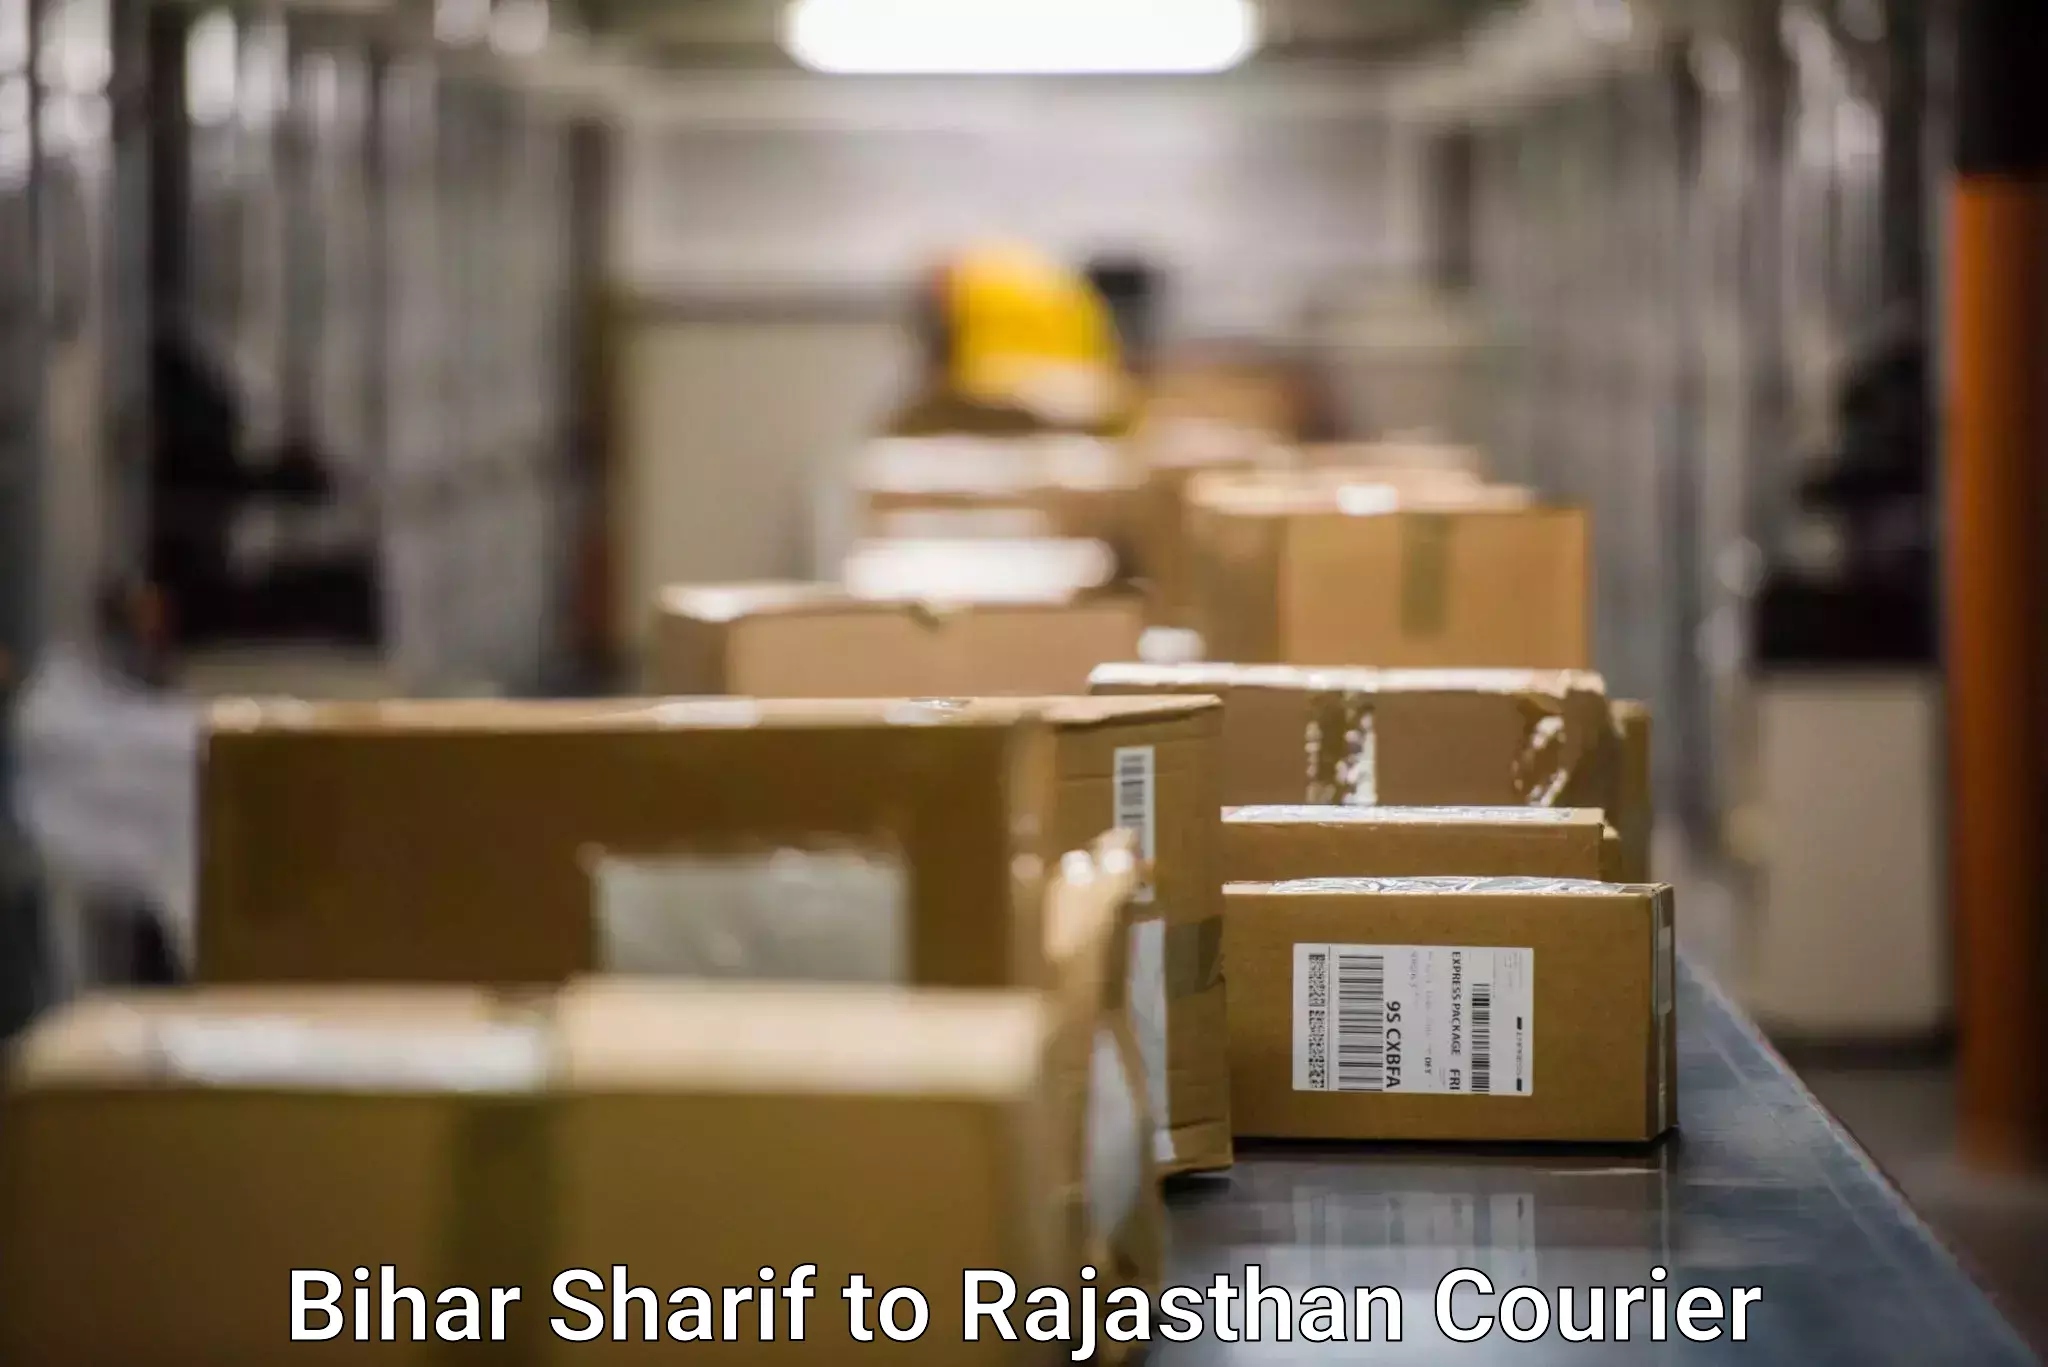 Door-to-door freight service Bihar Sharif to Rajasthan